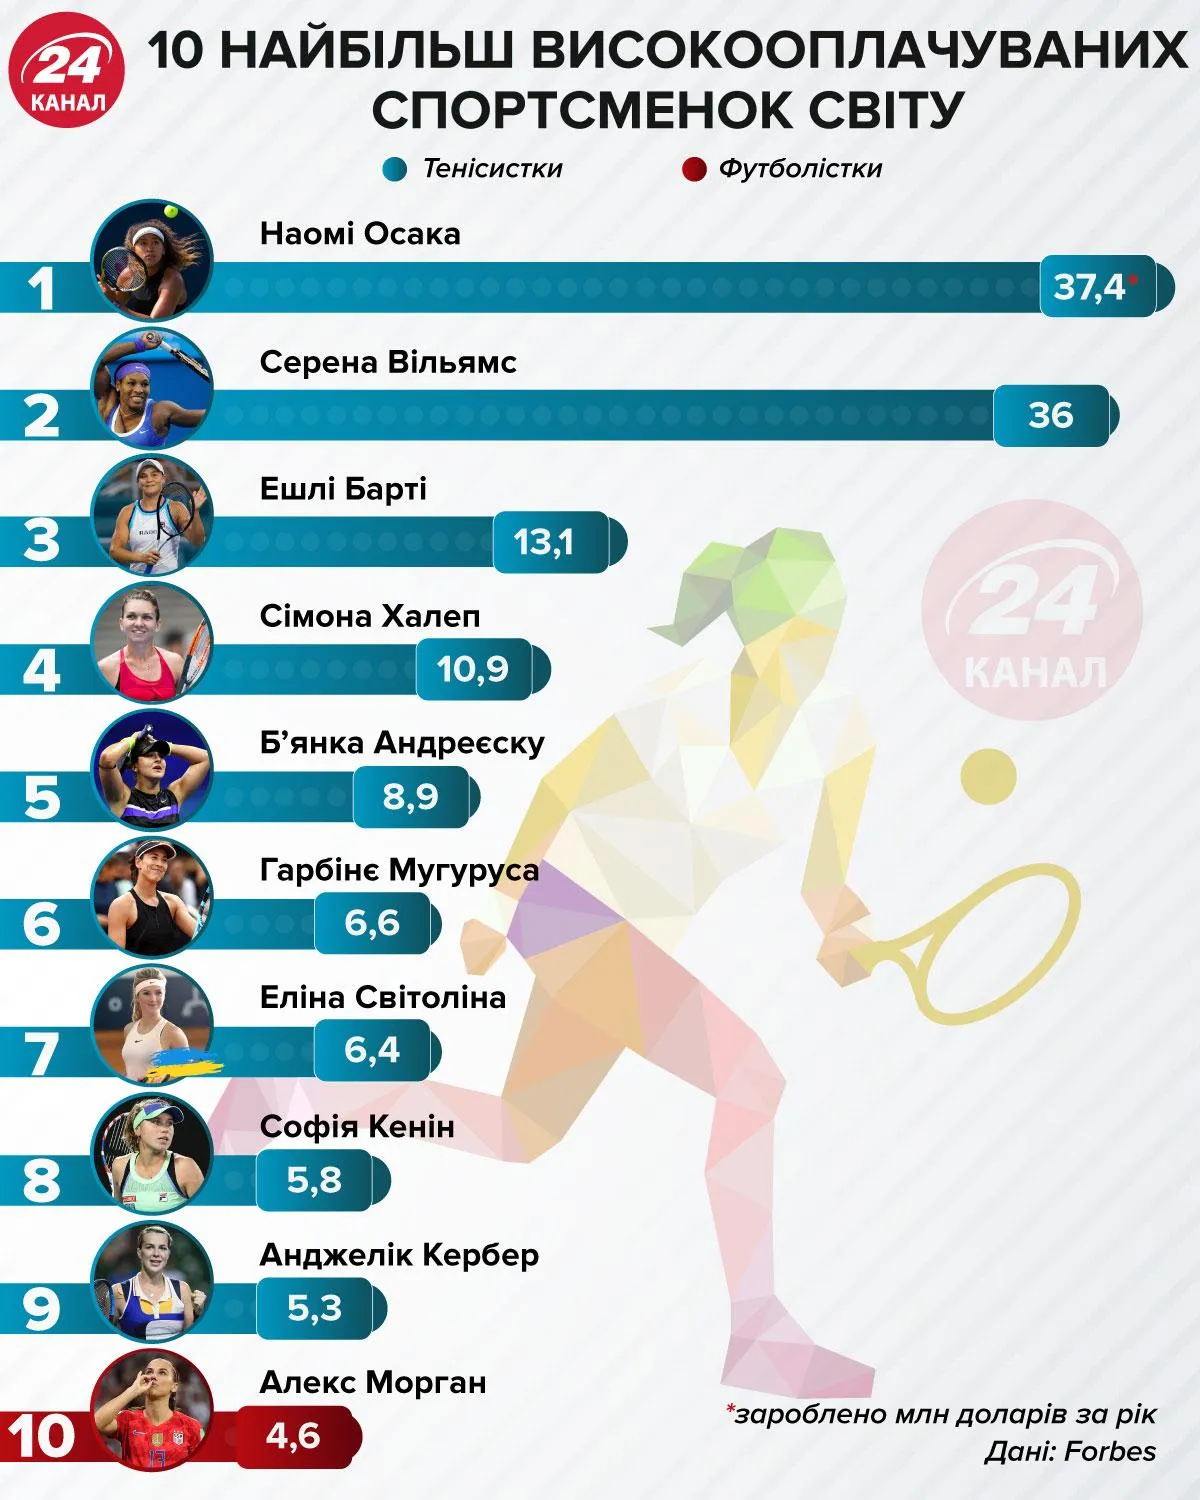 Найбільш високооплачувані спортсменки інфографік 24 каналу